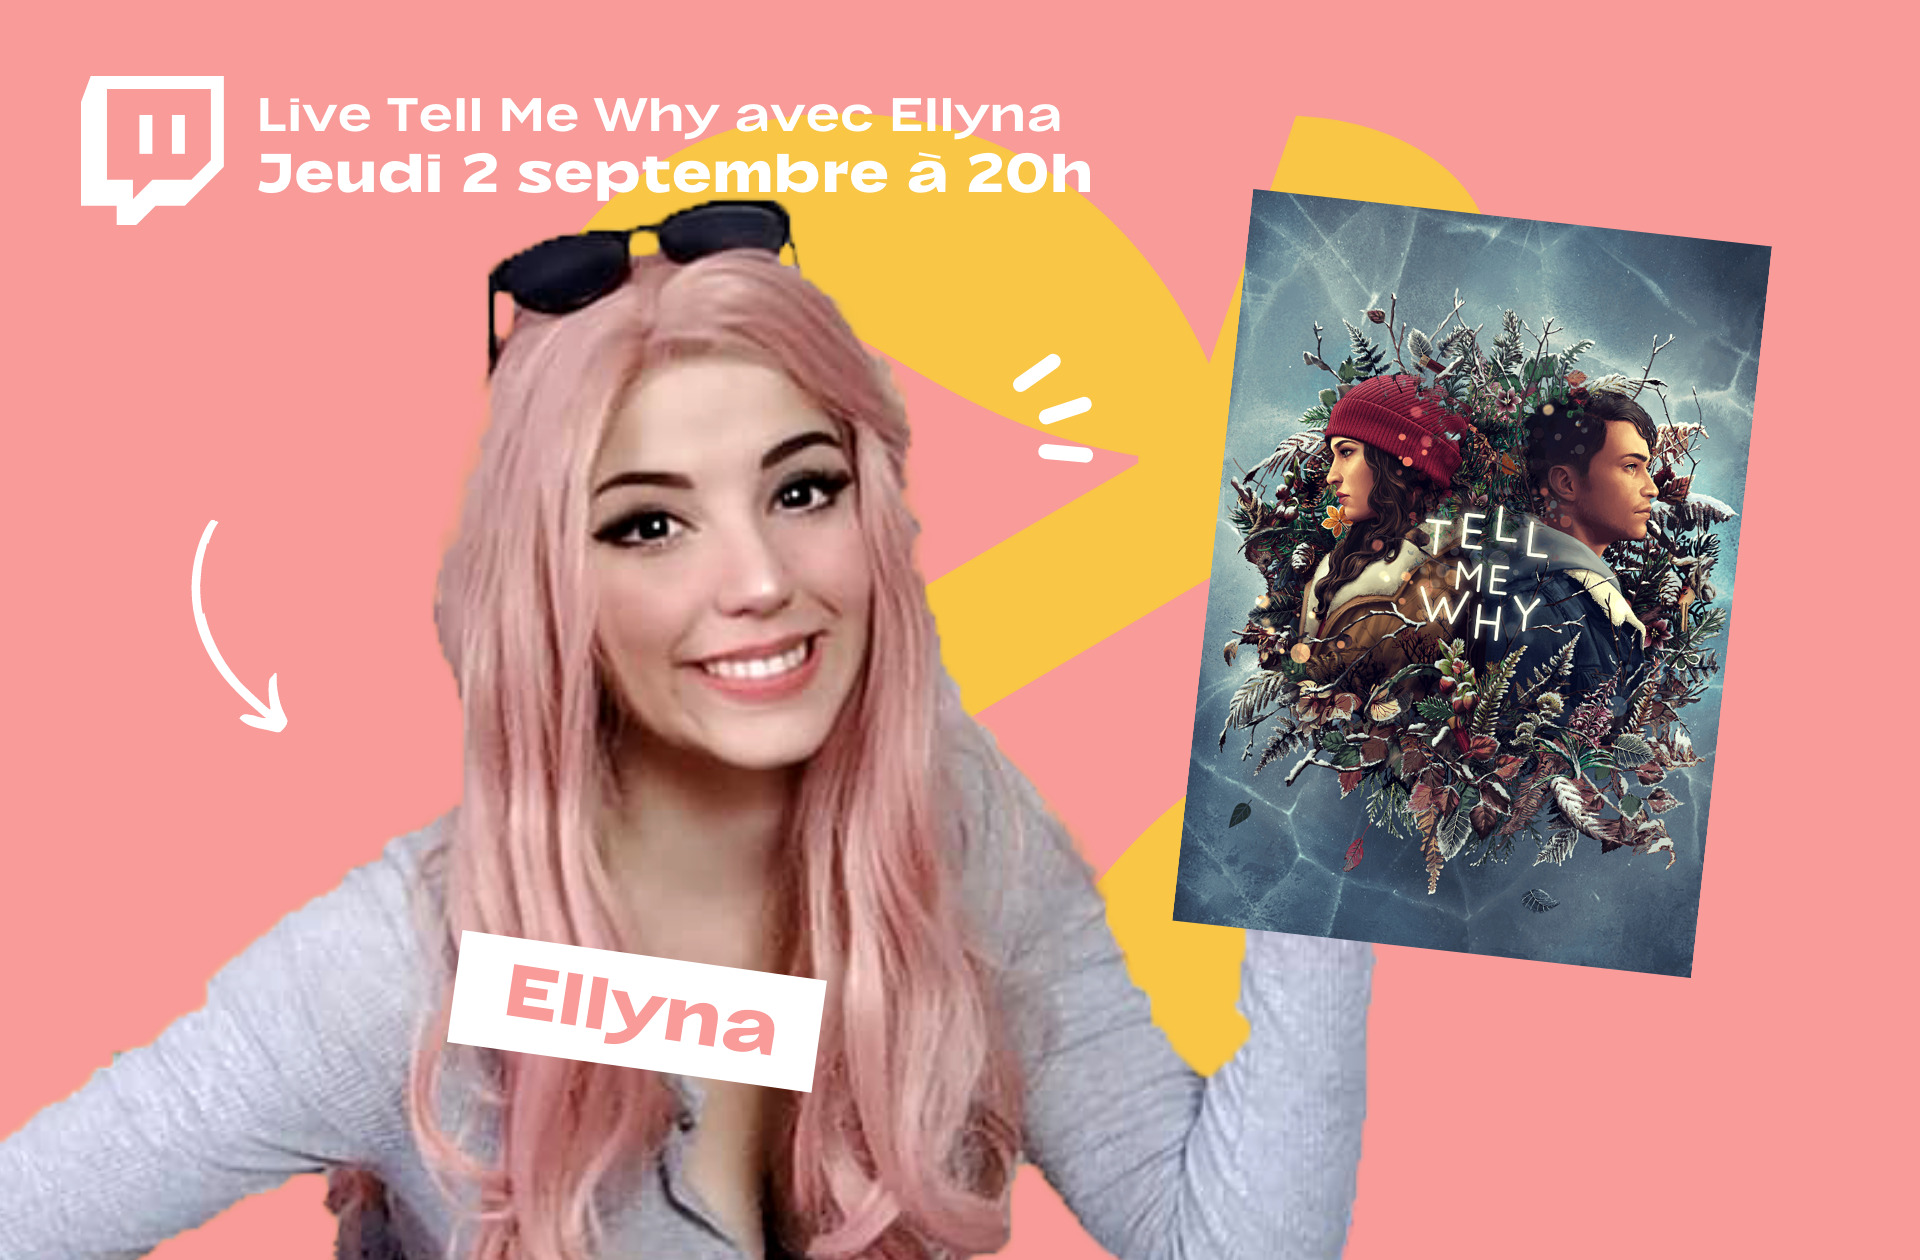 Sortez les mouchoirs : Ellyna joue au jeu narratif Tell Me Why avec vous ce soir sur Twitch !